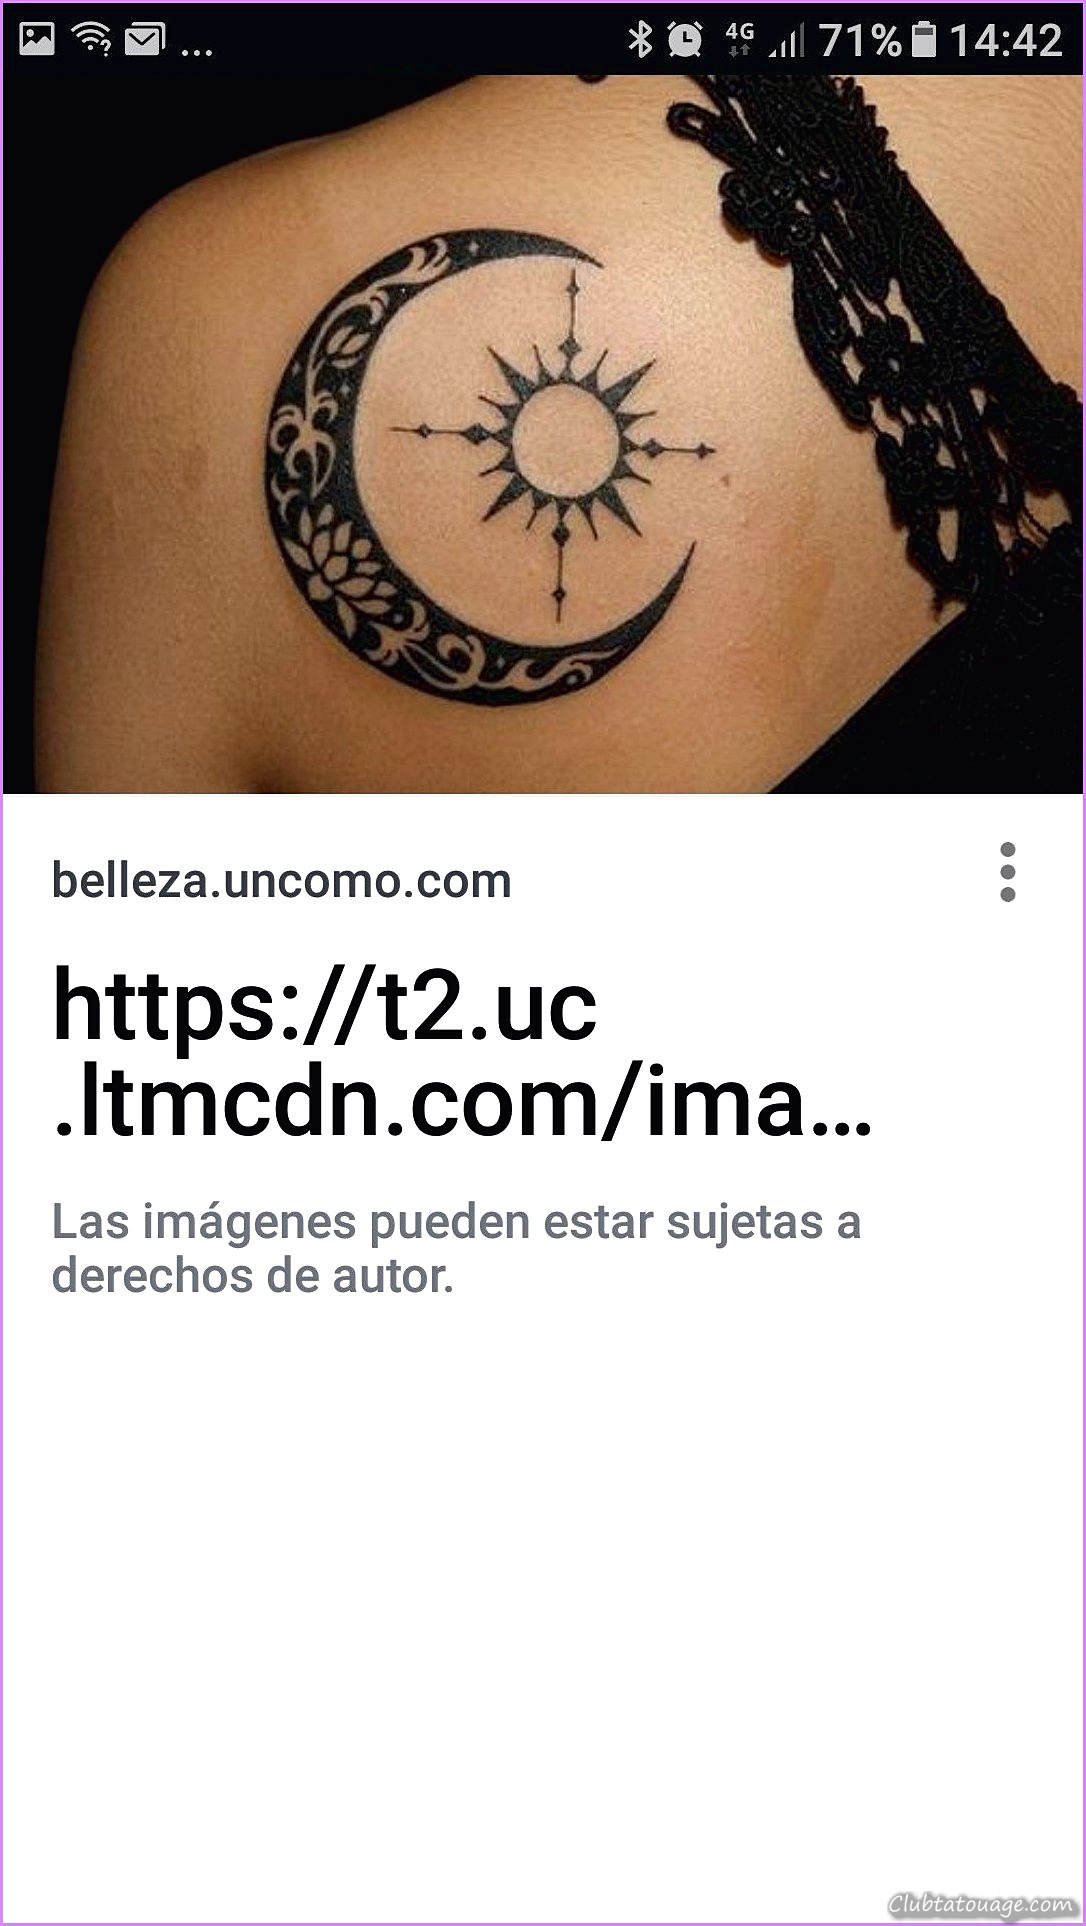 Compas images pour les femmes de tatouages